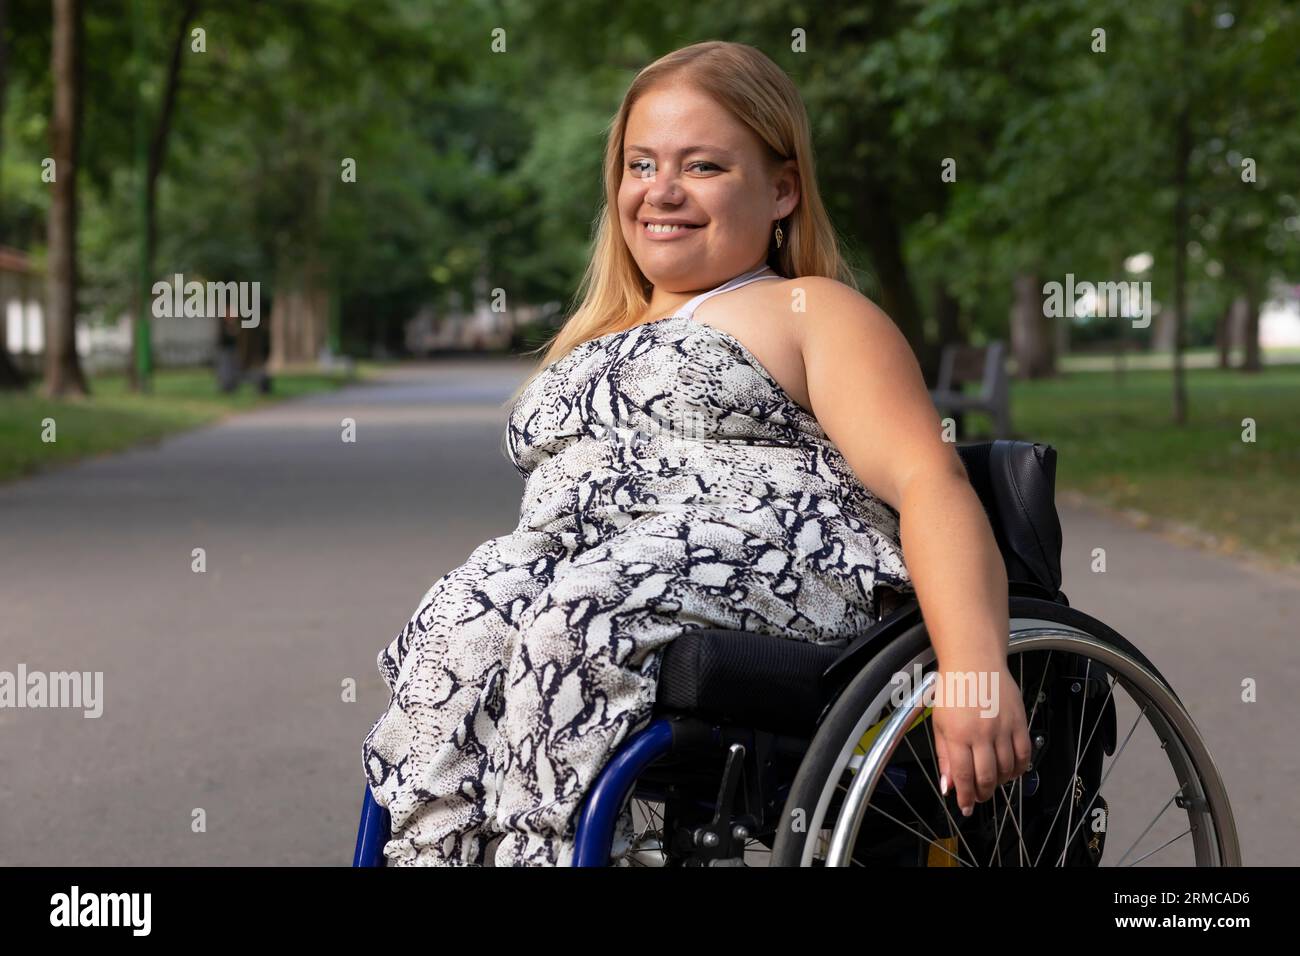 Souriant Happy Young Woman avec petite stature sur fauteuil roulant profite du temps dans Green Park au jour d'été. Femme adulte handicapée. Copier l'espace pour le texte Banque D'Images